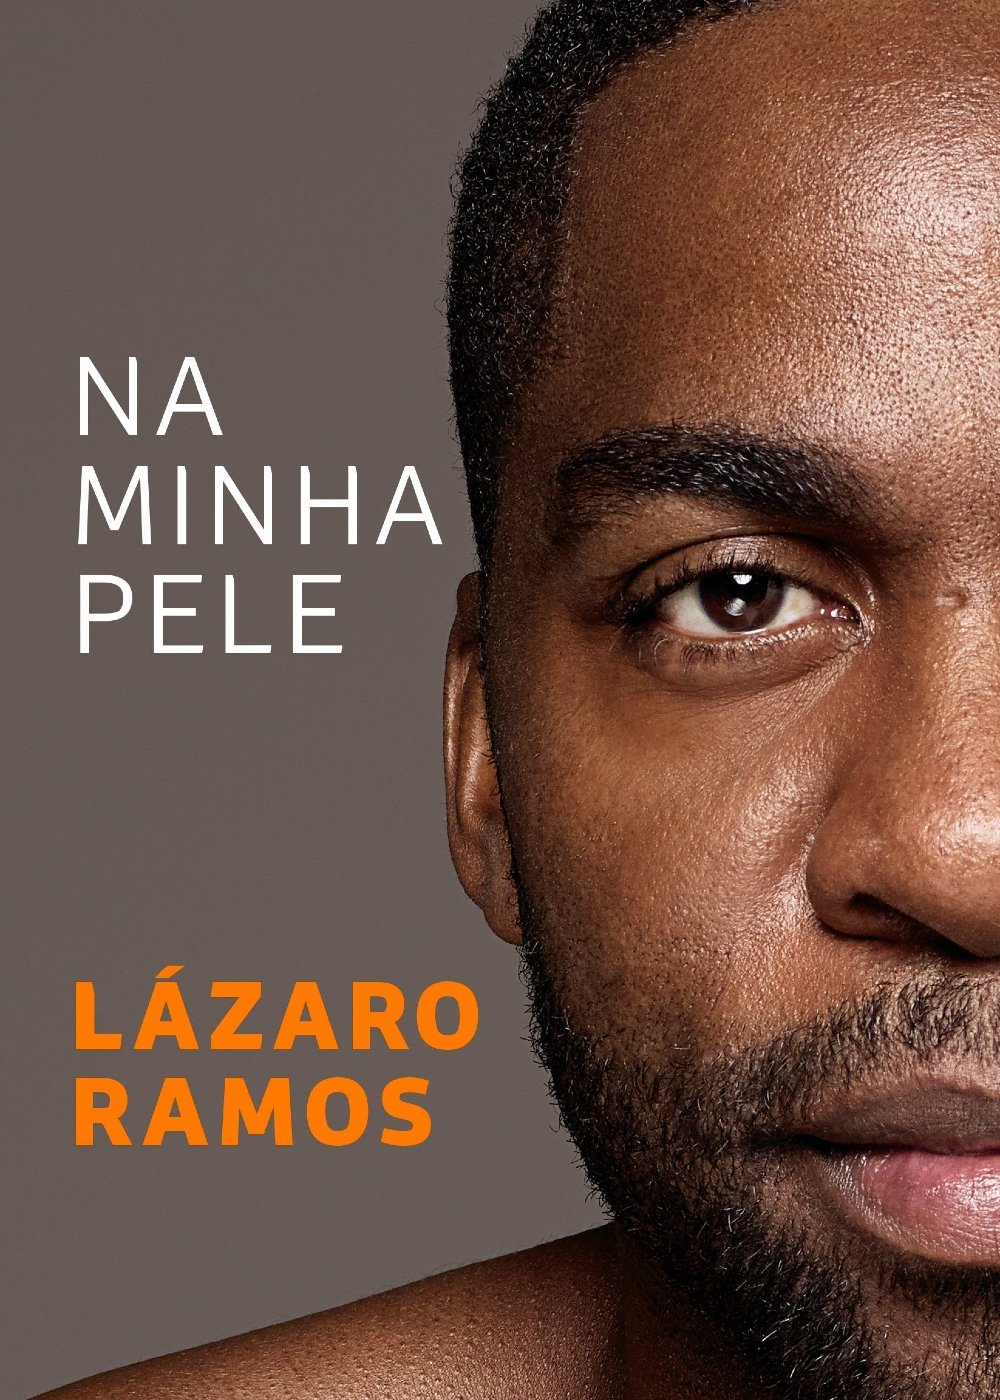 Lázaro Ramos - Na minha pele - Livro - livros de famosos - leitura - divulgação - https://stealthelook.com.br